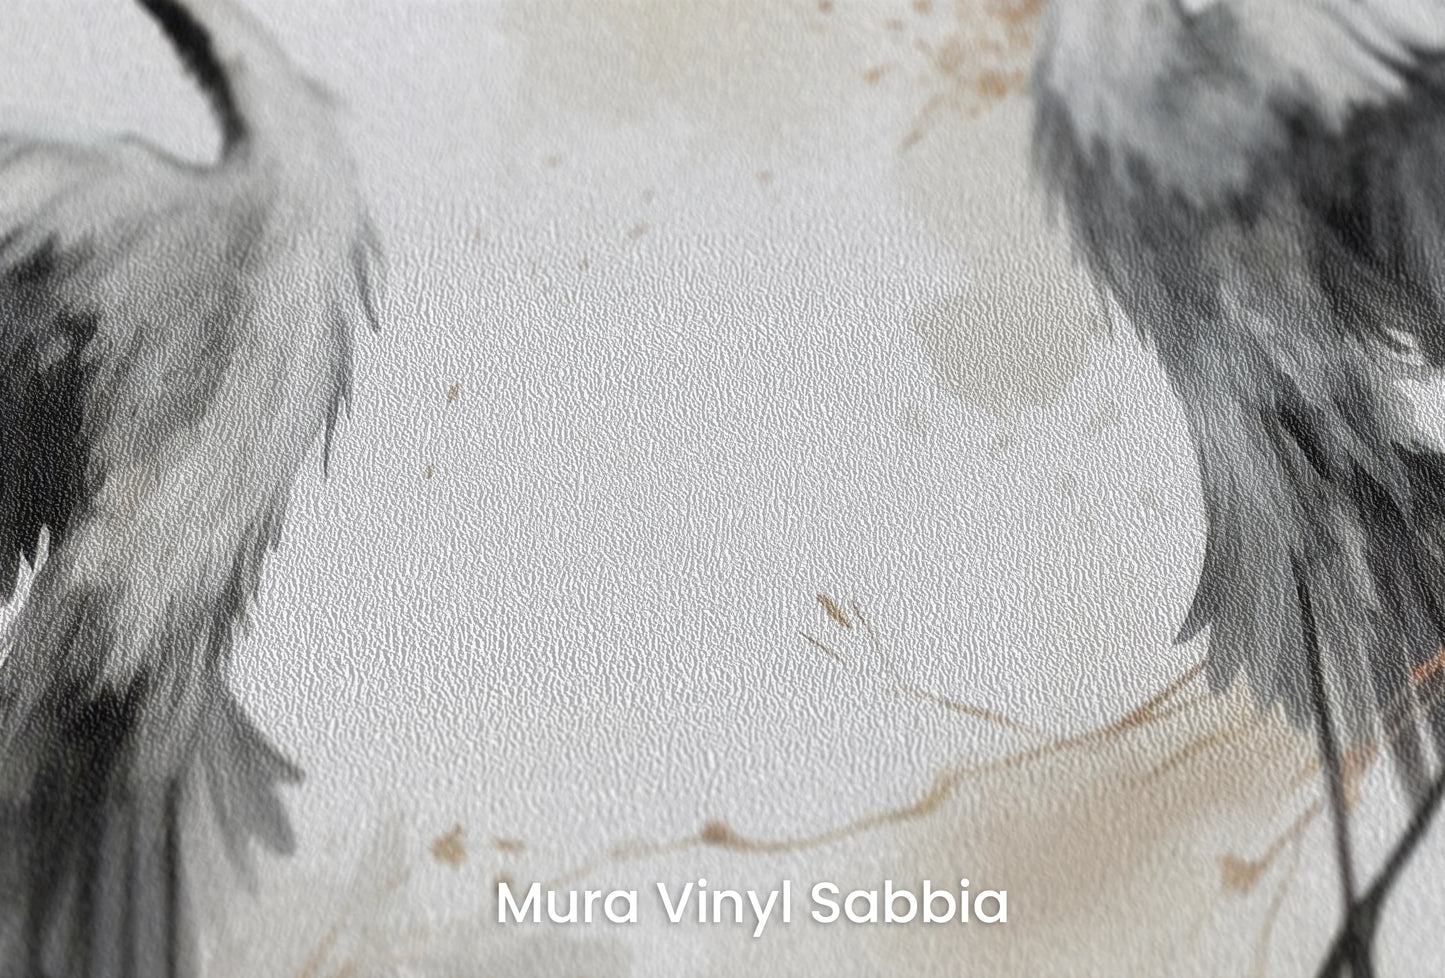 Zbliżenie na artystyczną fototapetę o nazwie Wings of Freedom na podłożu Mura Vinyl Sabbia struktura grubego ziarna piasku.